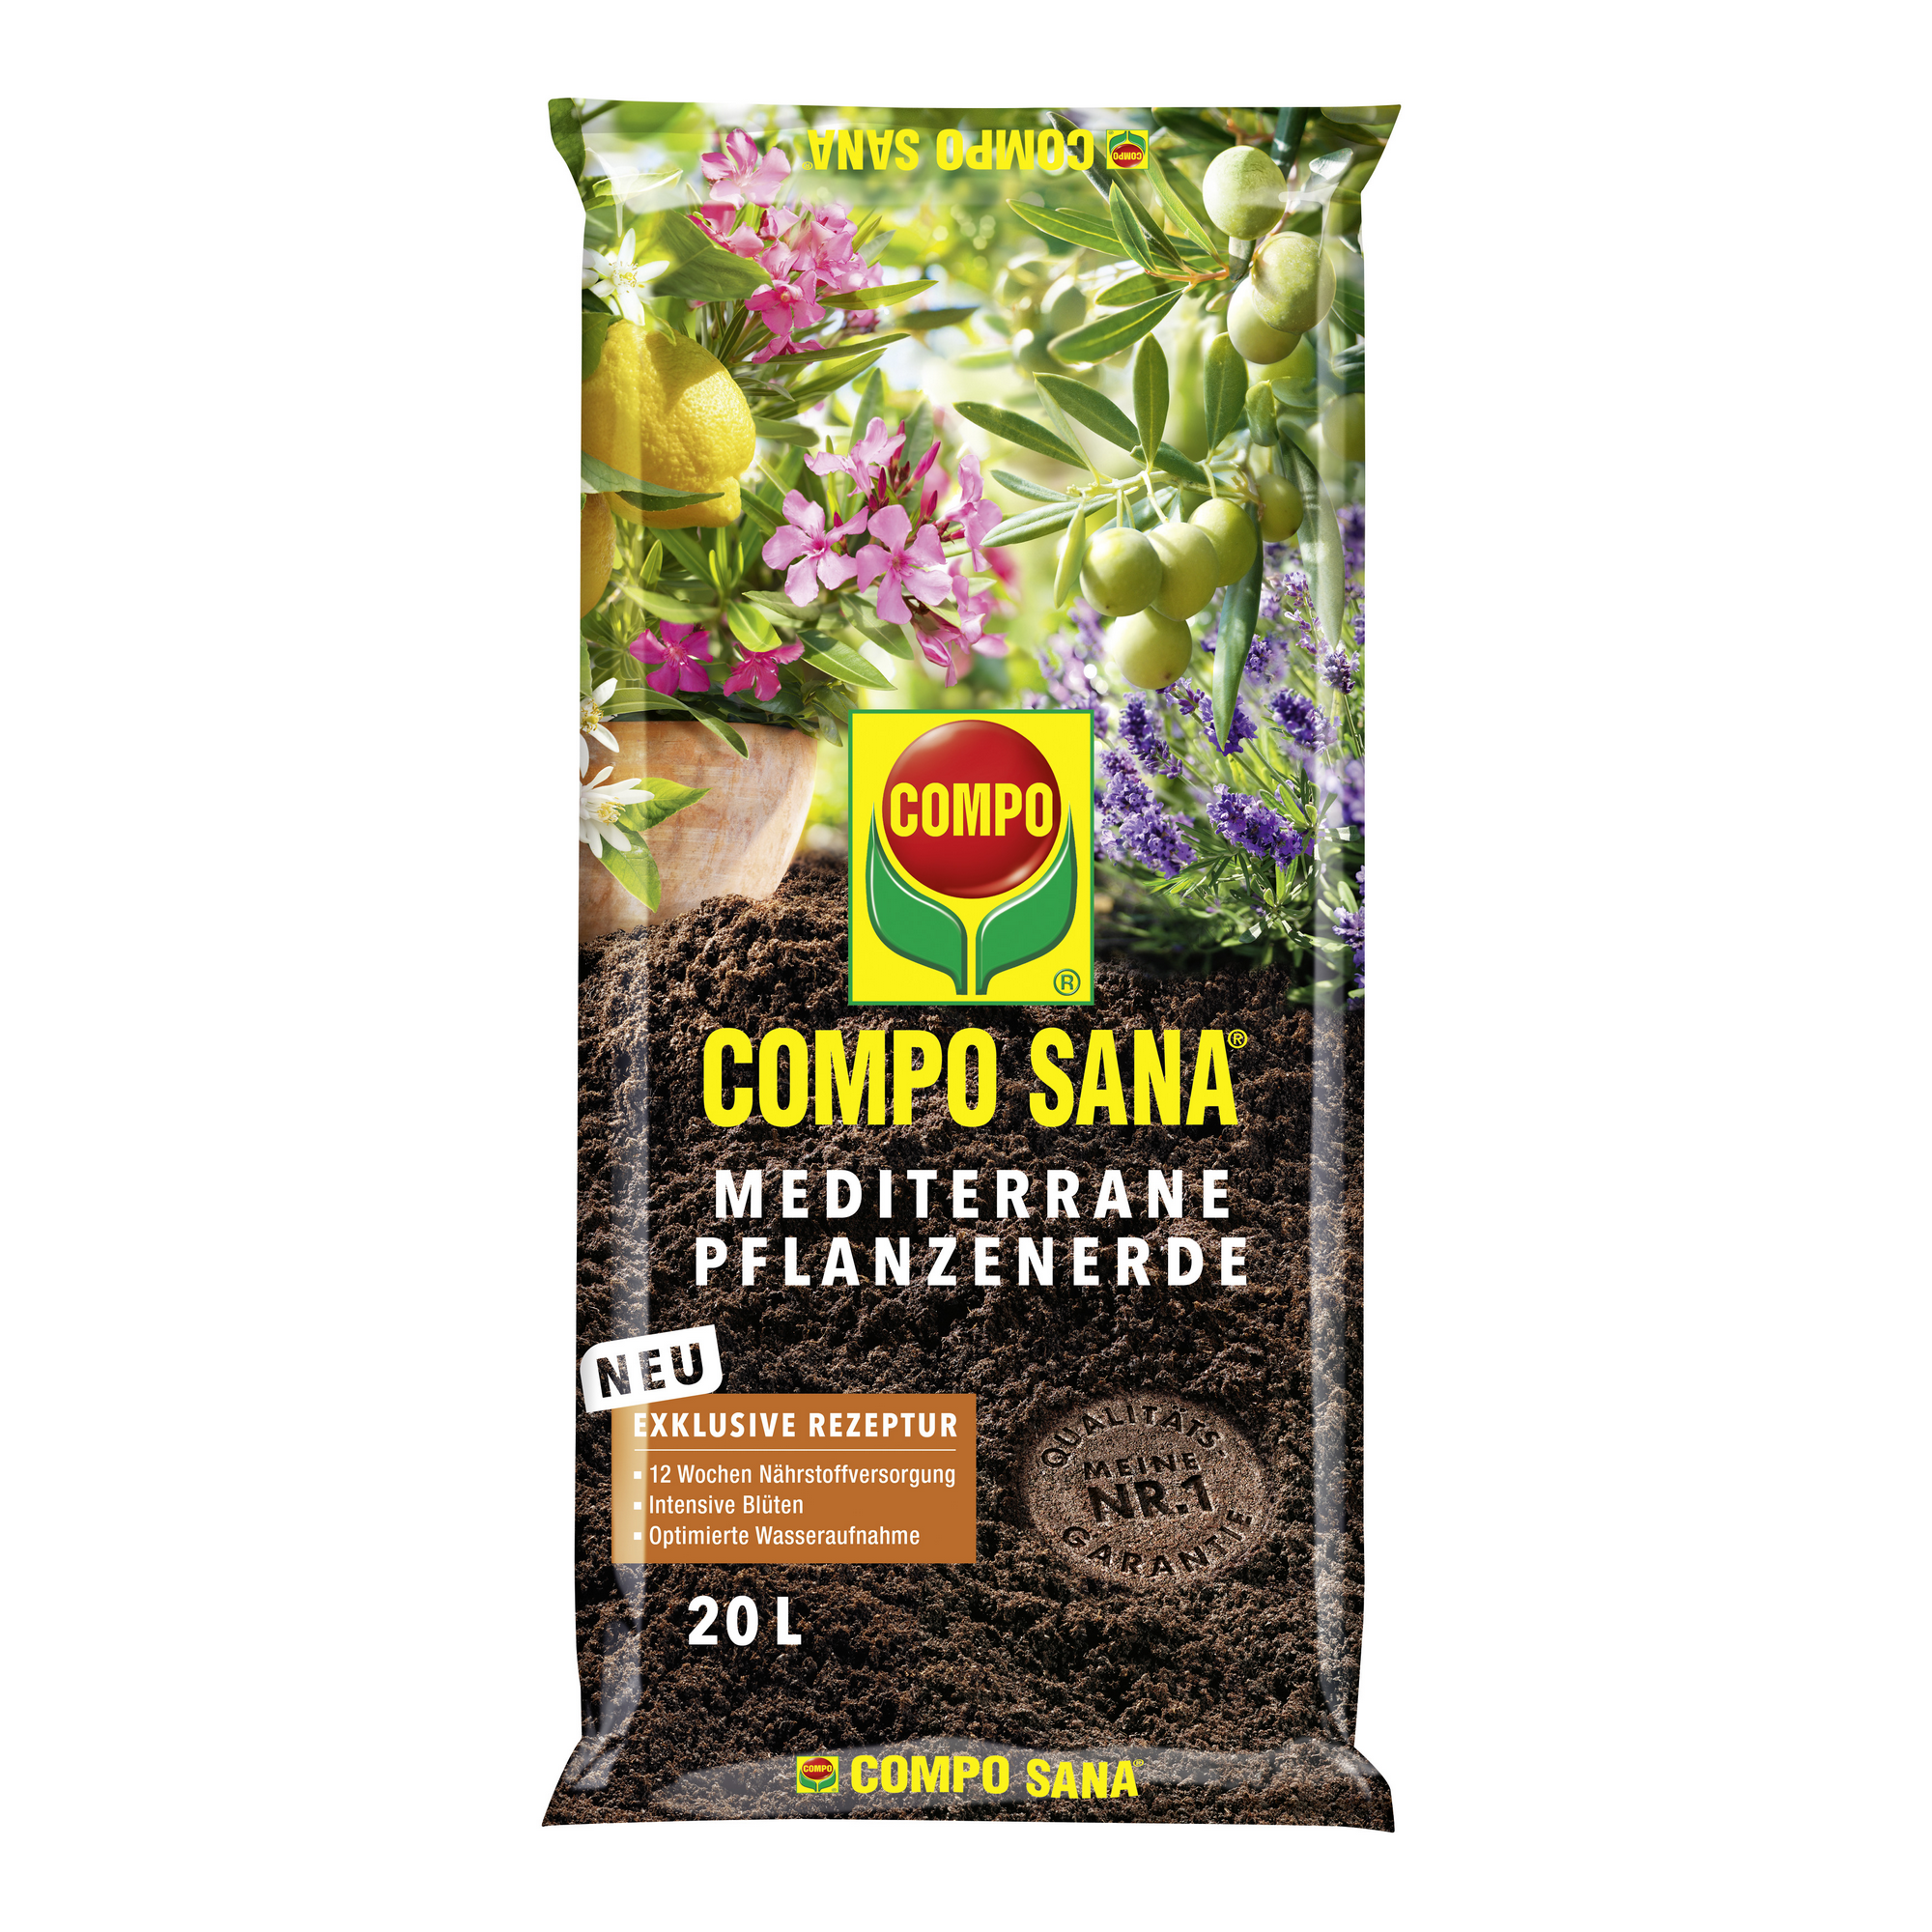 Compo Sana® Mediterrane Pflanzenerde 20 l + product picture